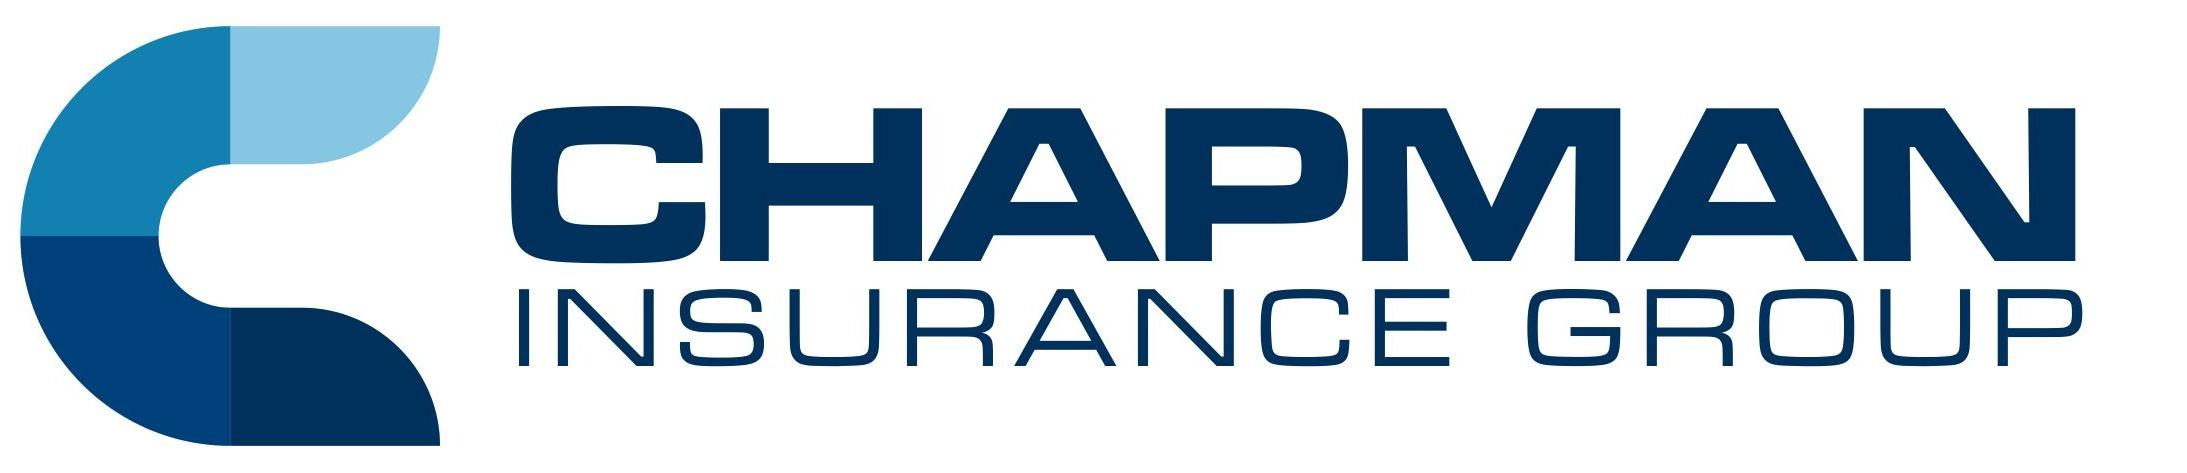 Chapman Insurance Group Photo